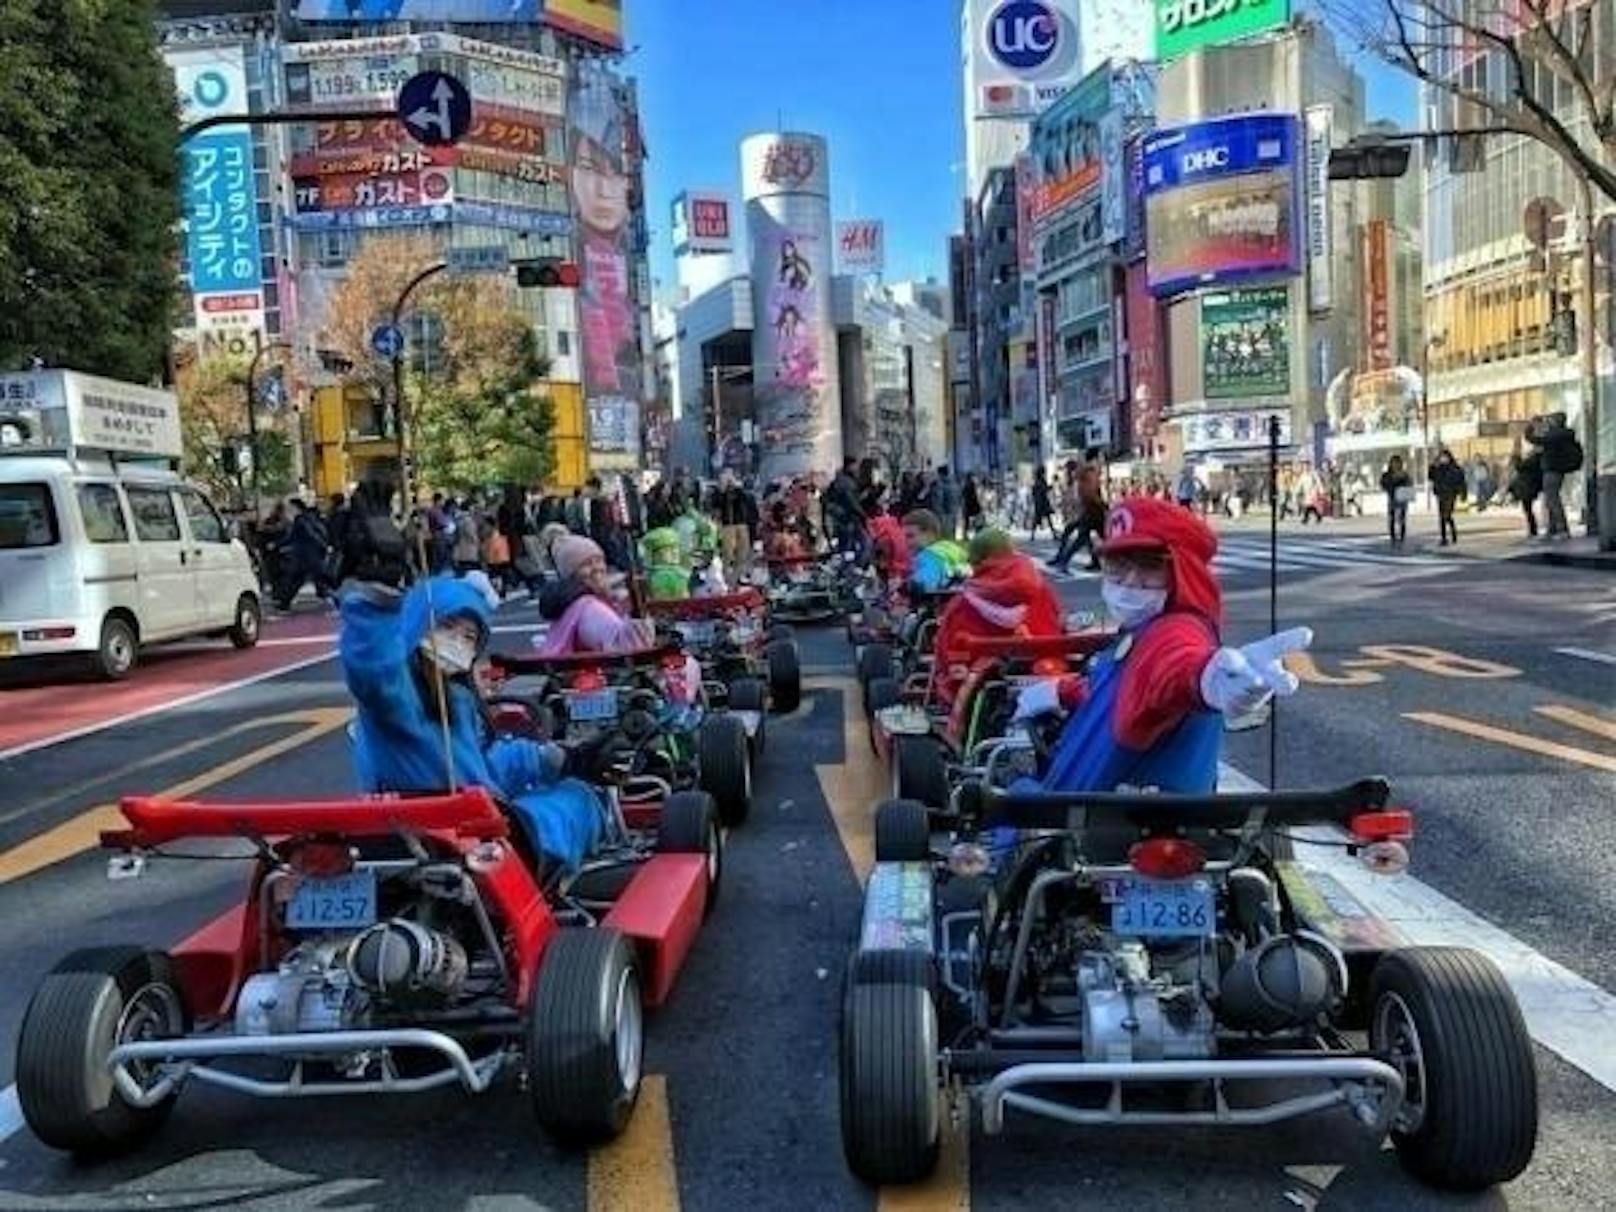 Menschen, die sich als Mario oder Luigi verkleiden und in Gokarts durch die Straßen sausen, sind in Tokio ein alltäglicher Anblick. Vielleicht aber nicht mehr lange, denn nach verschiedenen Unfällen soll die Aktivität nun verboten werden. Die Karts werden von einer in Tokio ansässigen Firma namens MariCar betrieben. Die Firma befindet sich zudem in einem Rechtsstreit um geistiges Eigentum mit Nintendo, dem Erfinder der "Mario Kart"-Reihe.